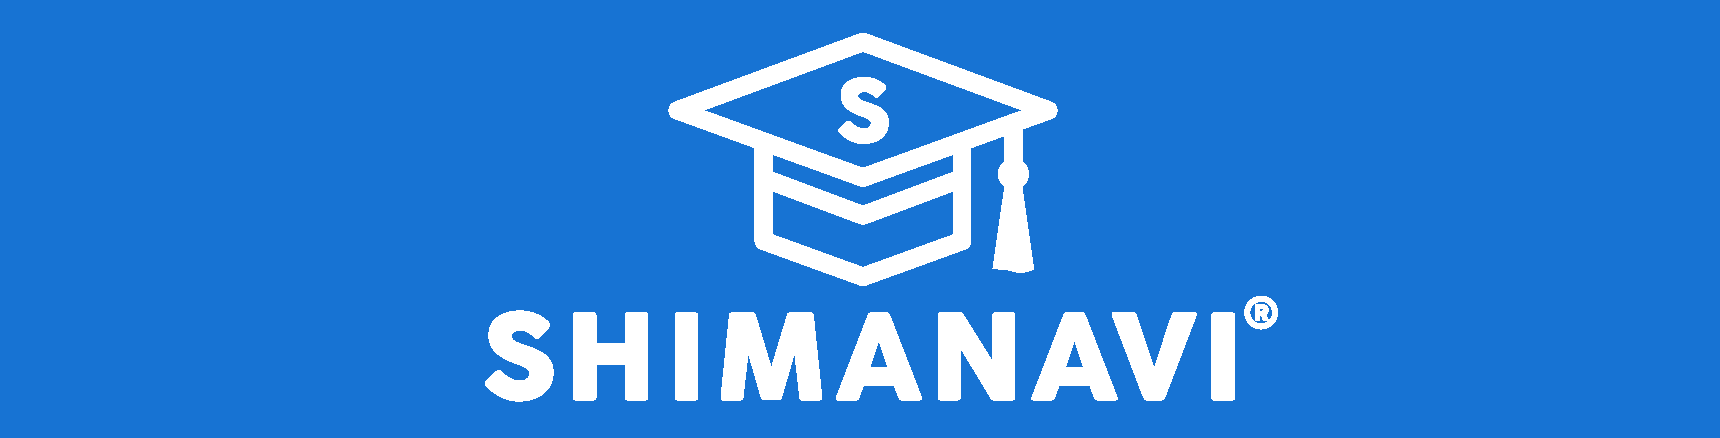 SHIMA SEIKI e-Learning -SHIMANAVI-